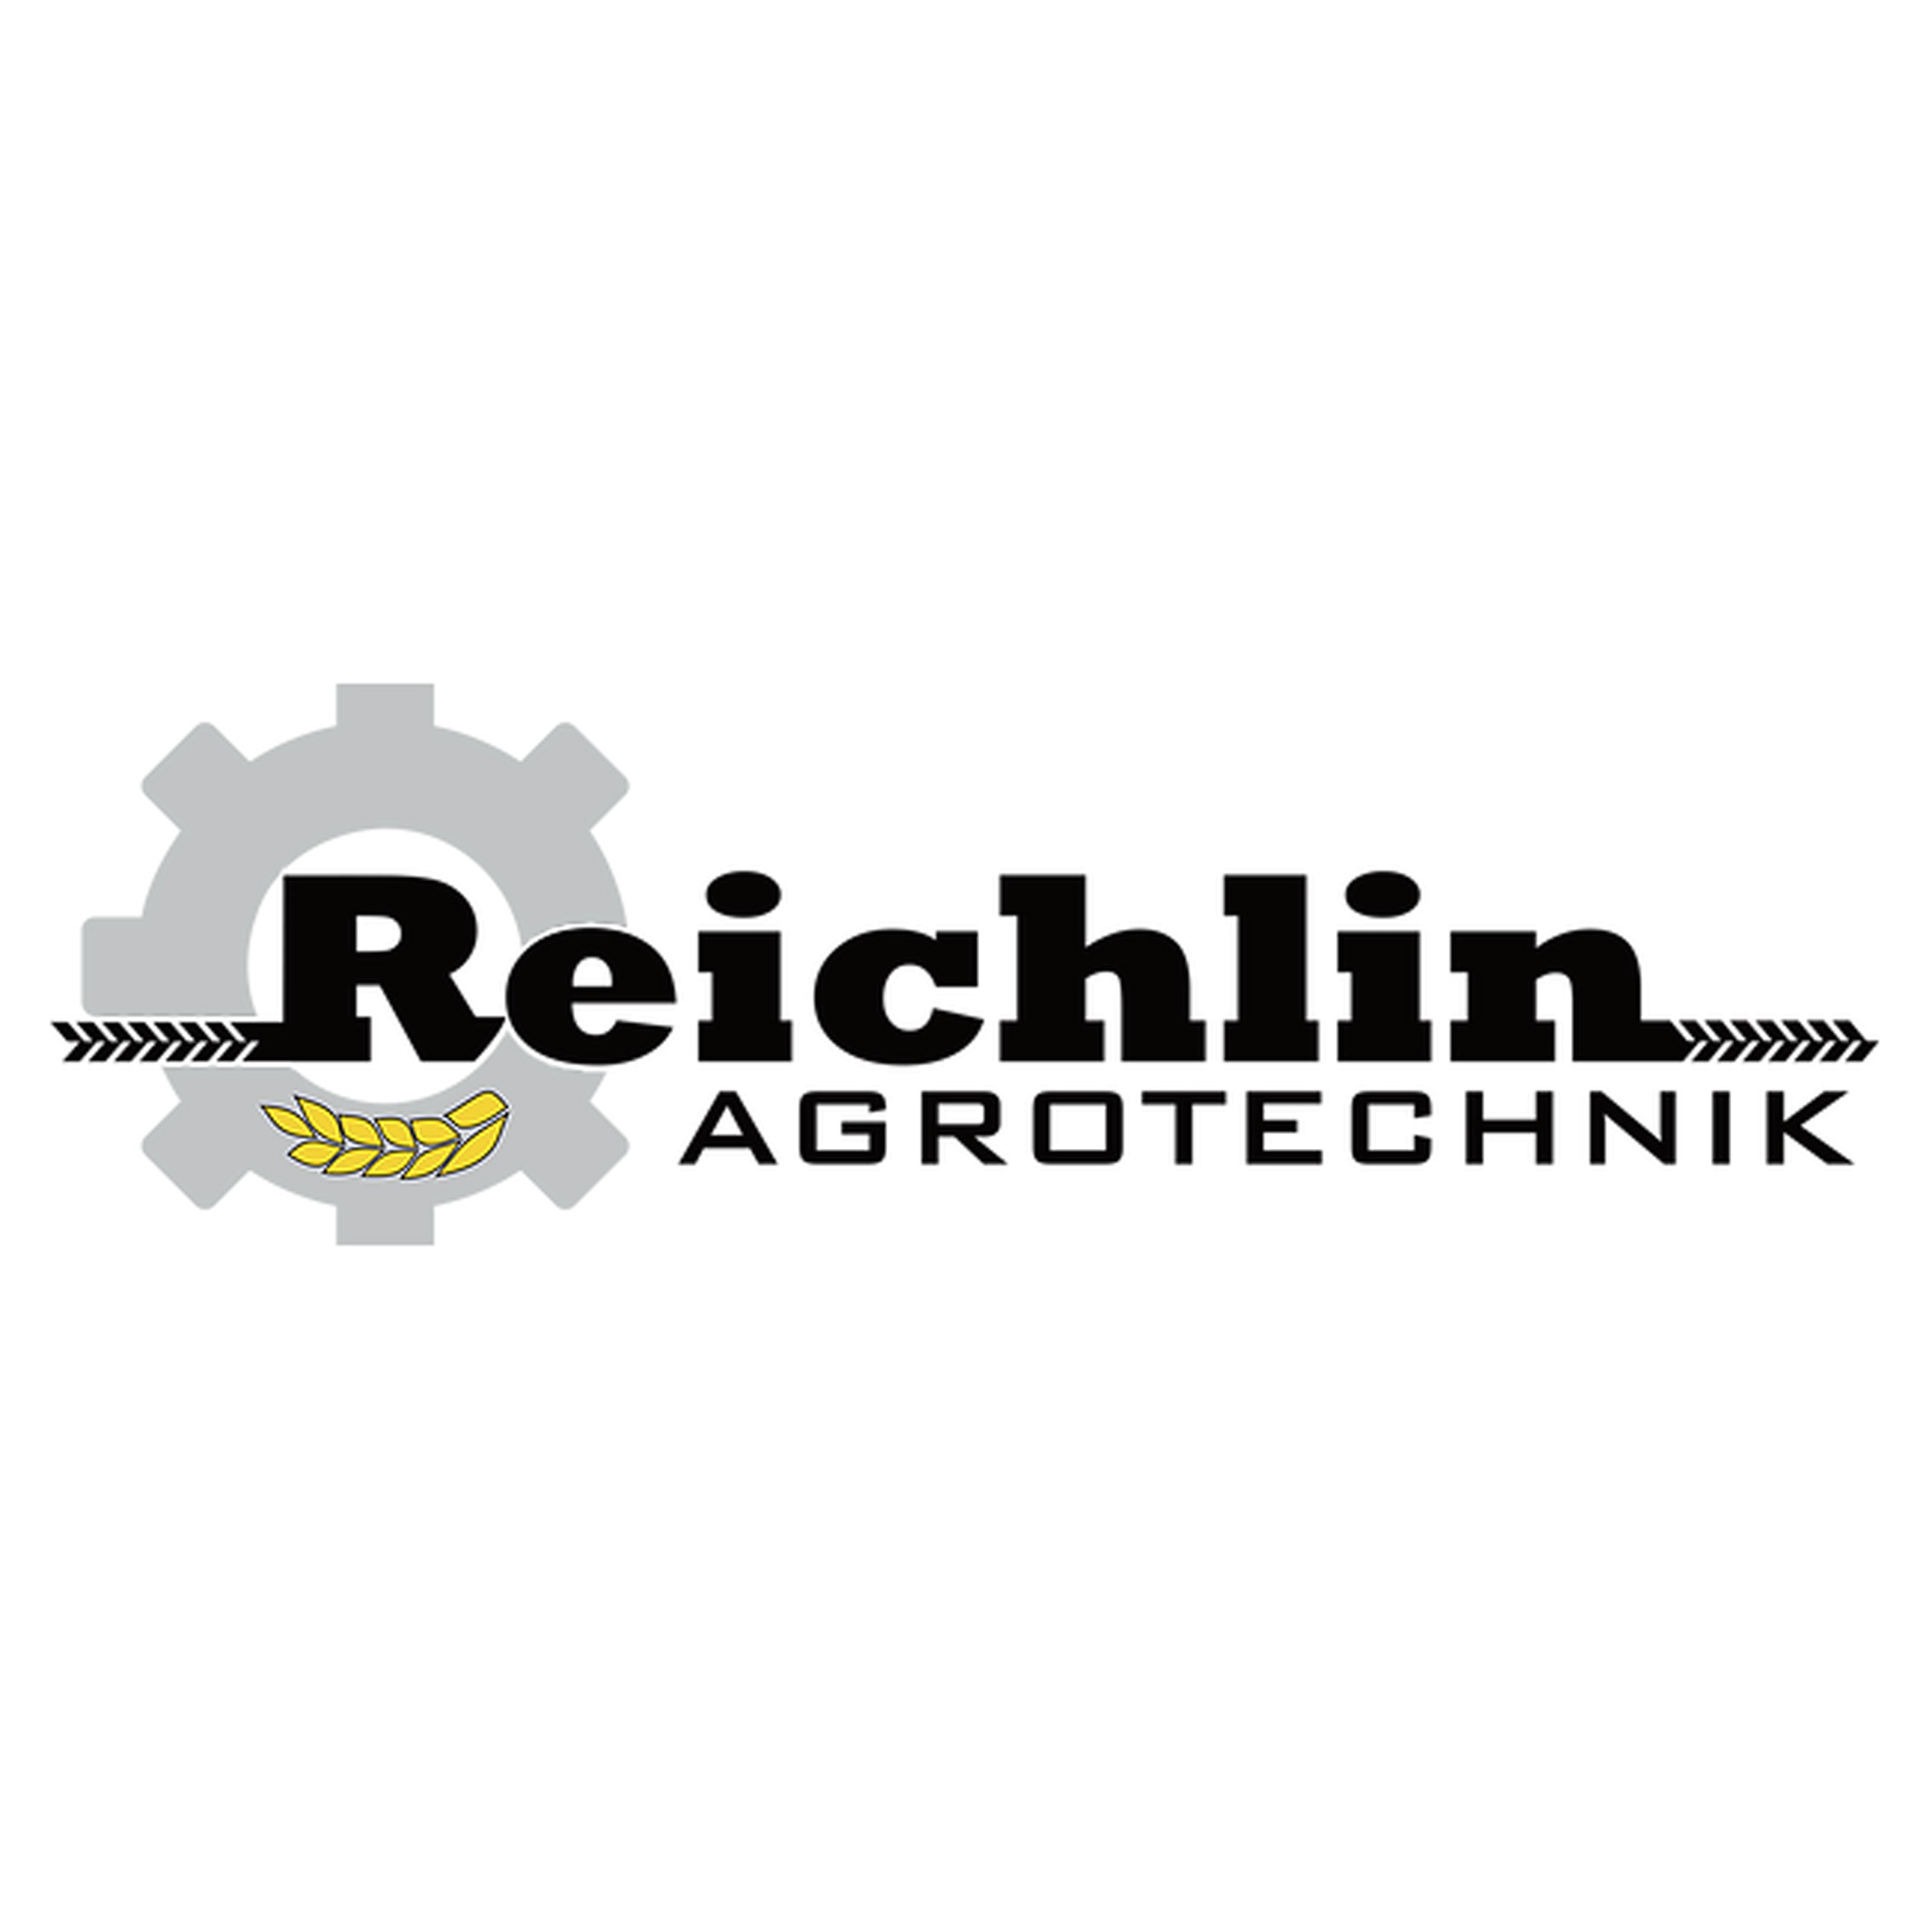 Reichlin AgroTechnik Logo